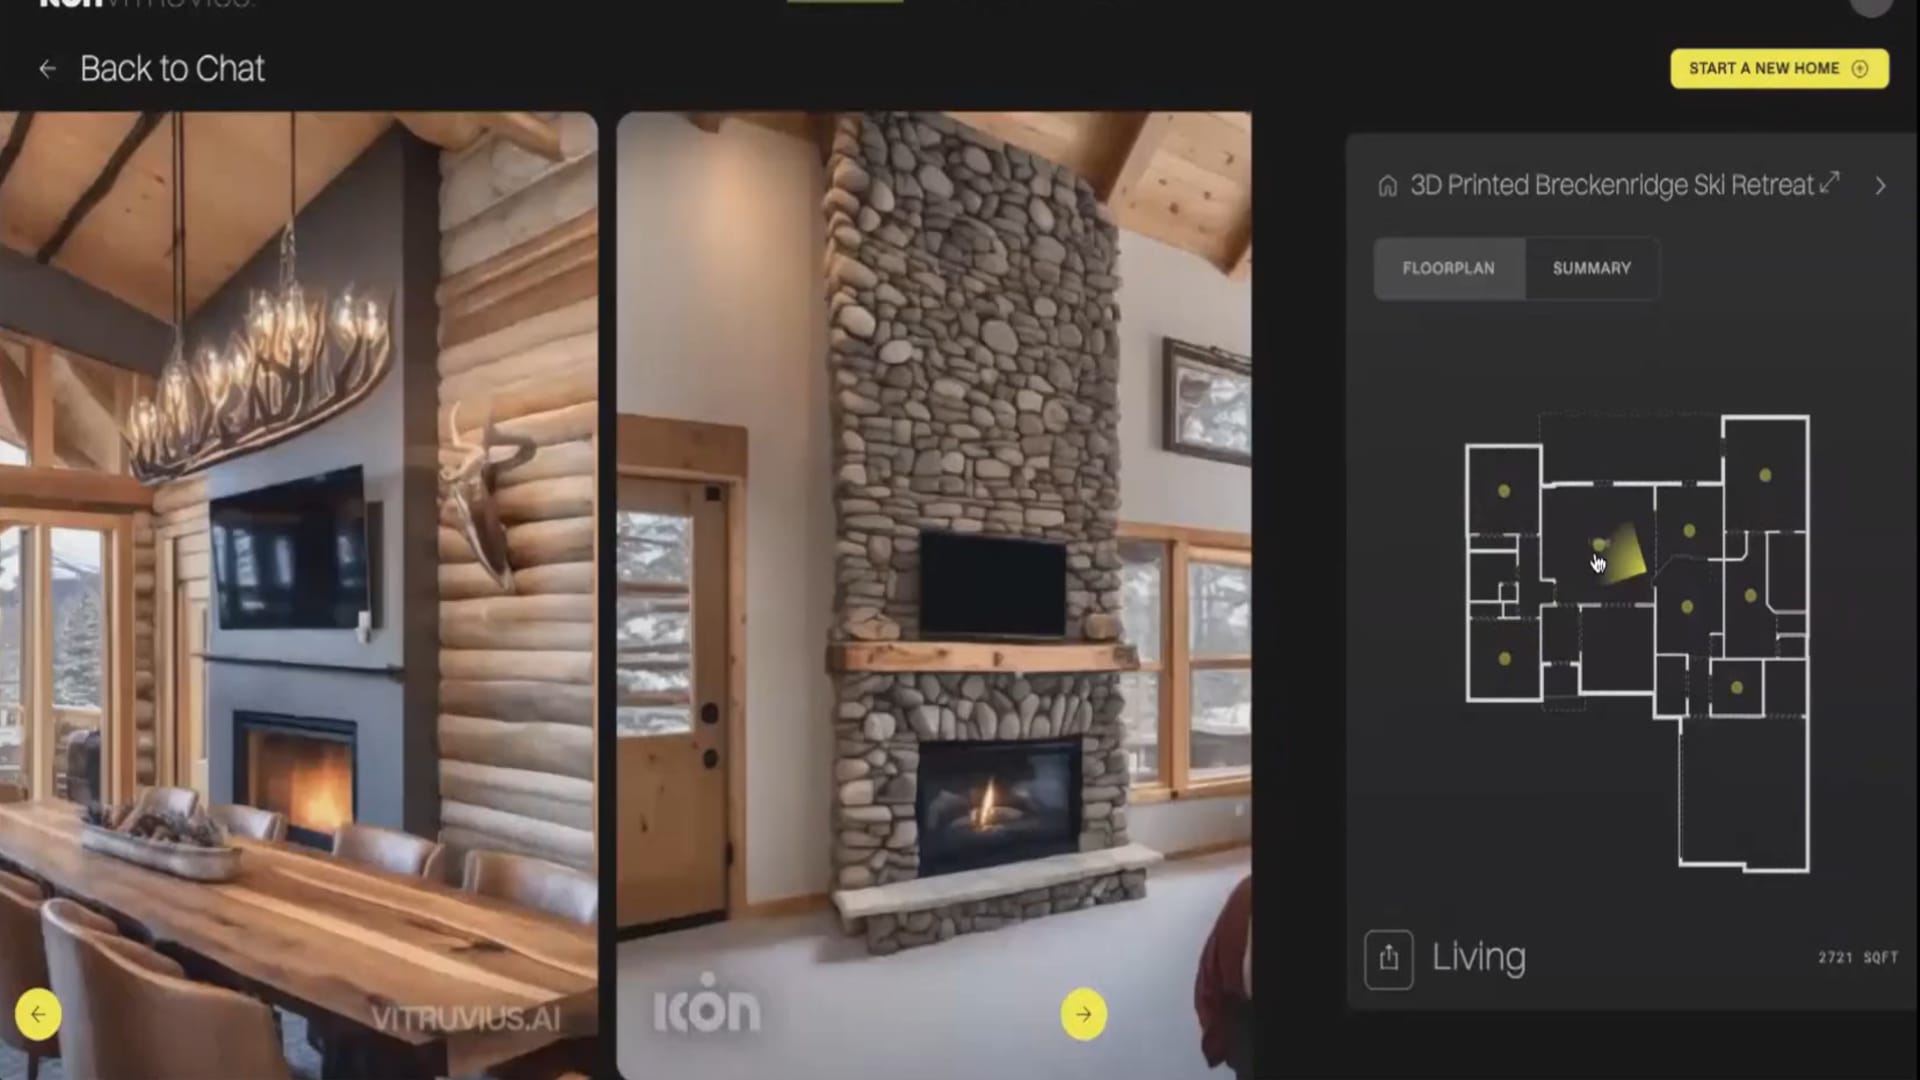 ICON’s Vitruvius AI program designs dream homes